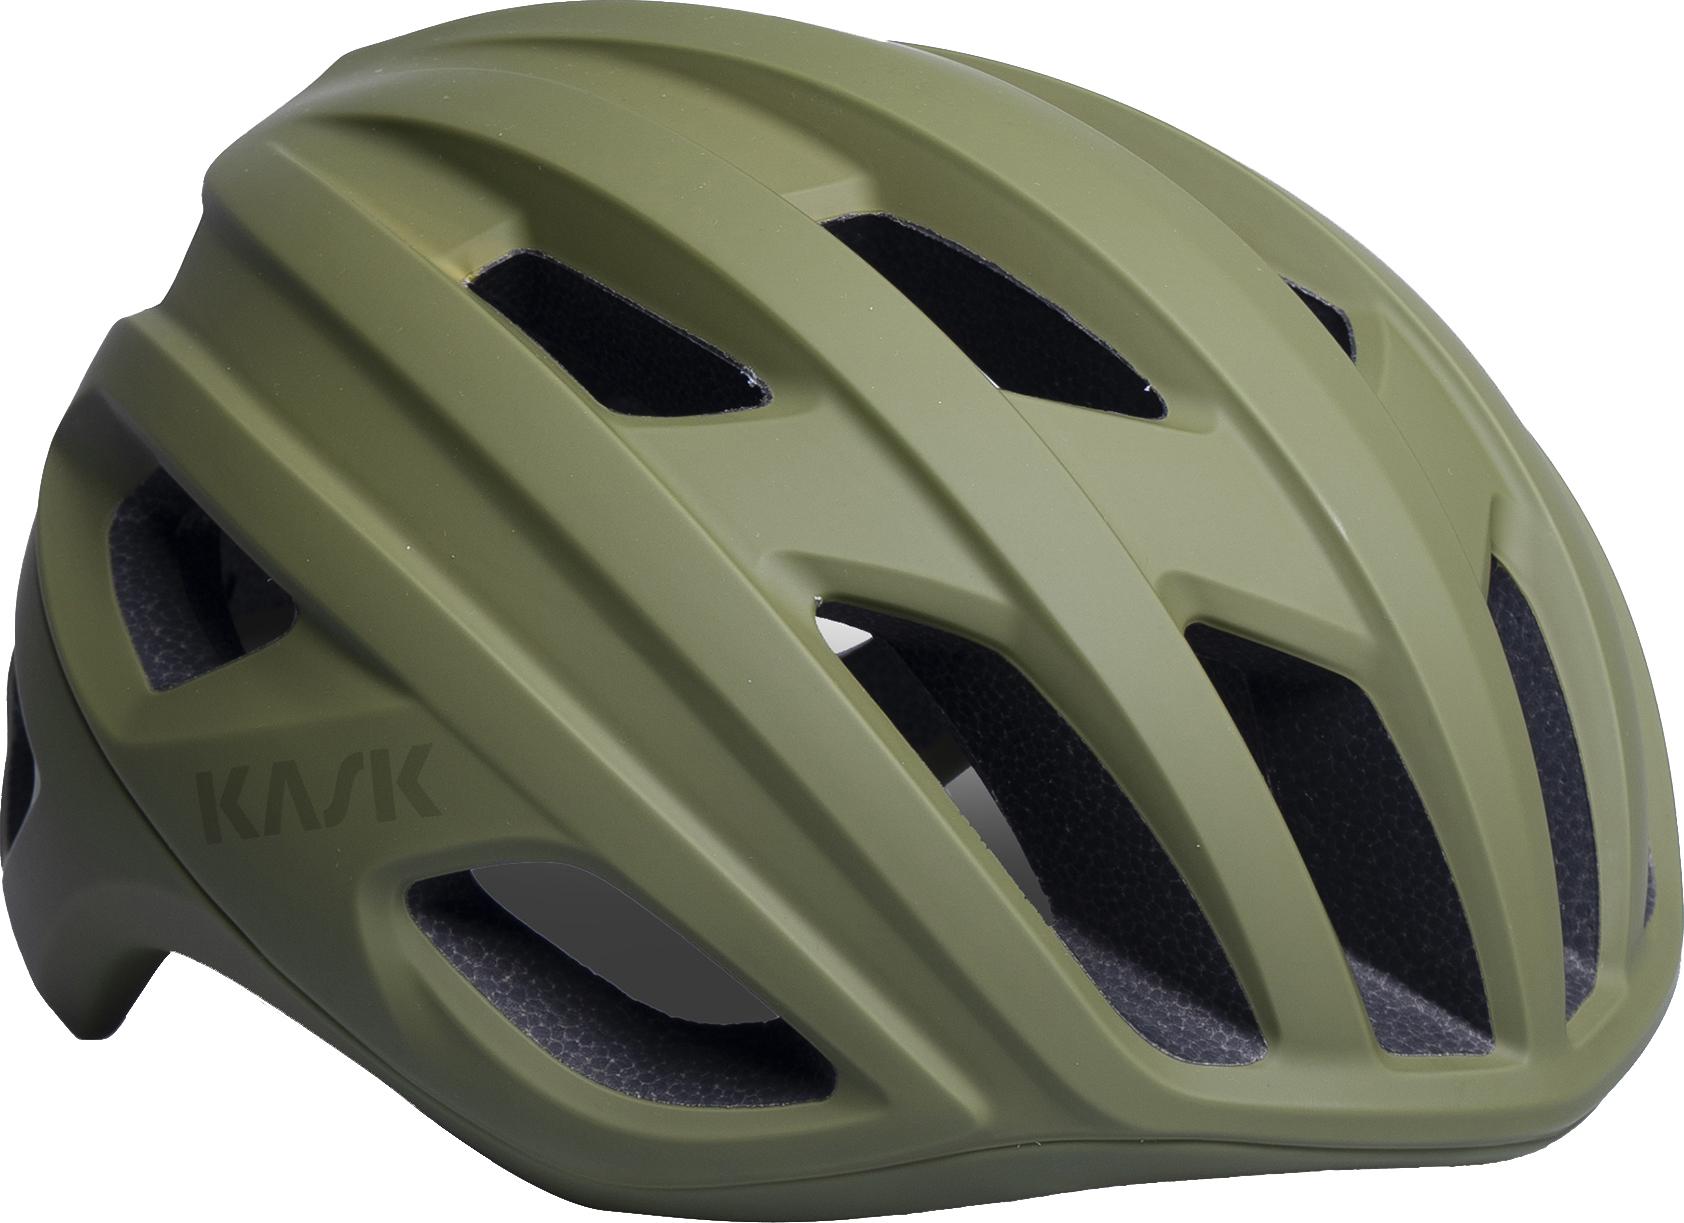 Kask Mojito3 Matte Road Helmet (wg11) - Olive Green Matte